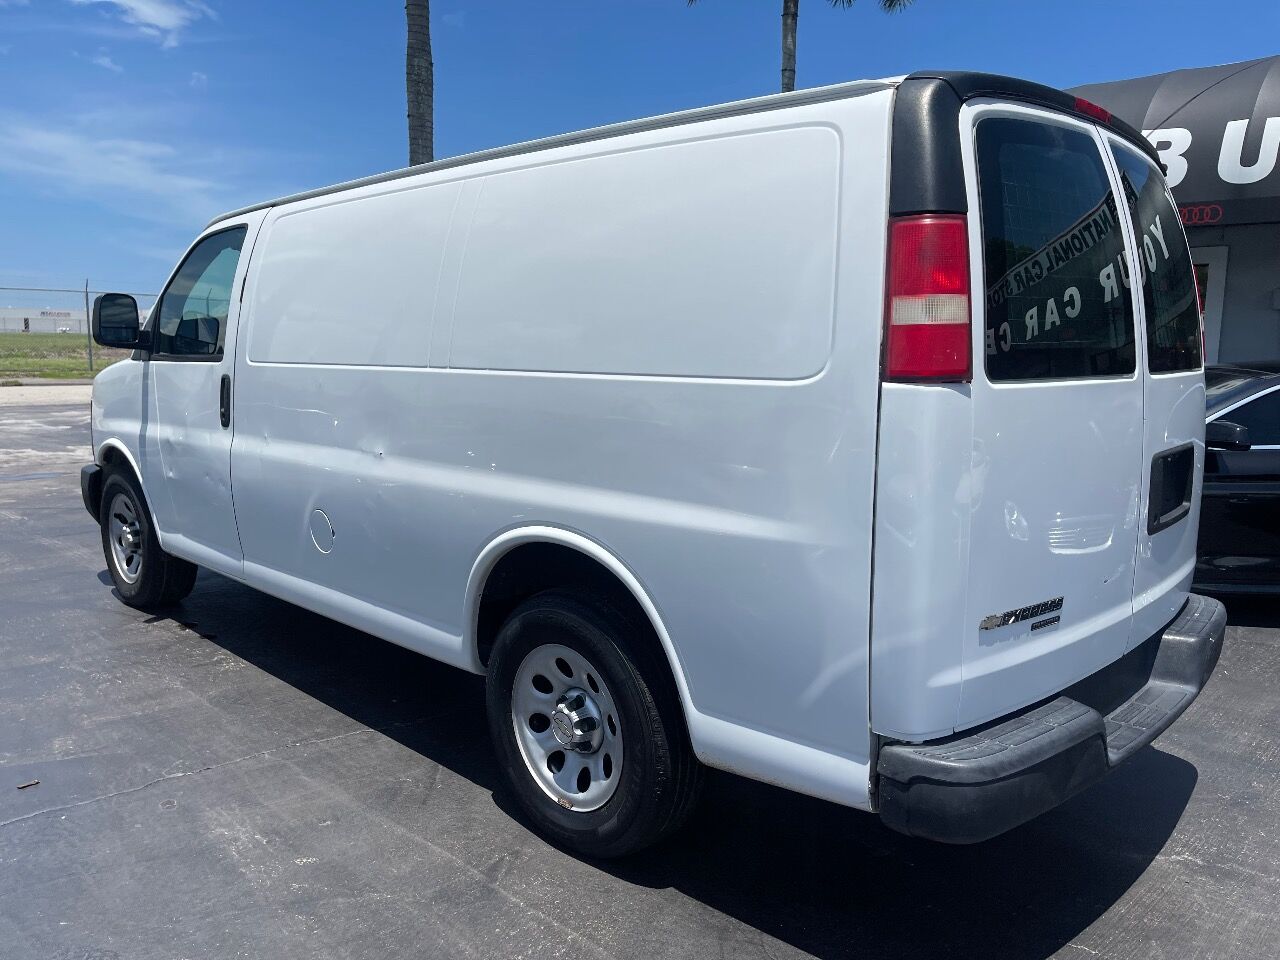 2014 CHEVROLET Express Van - $16,900